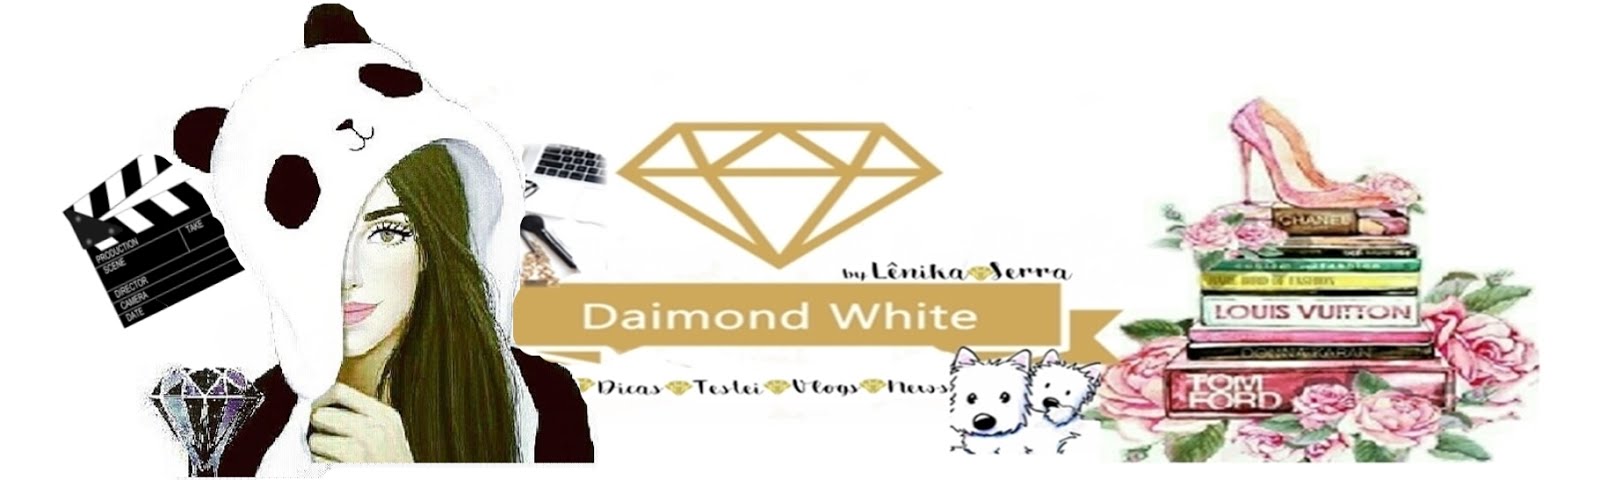 Daimond White